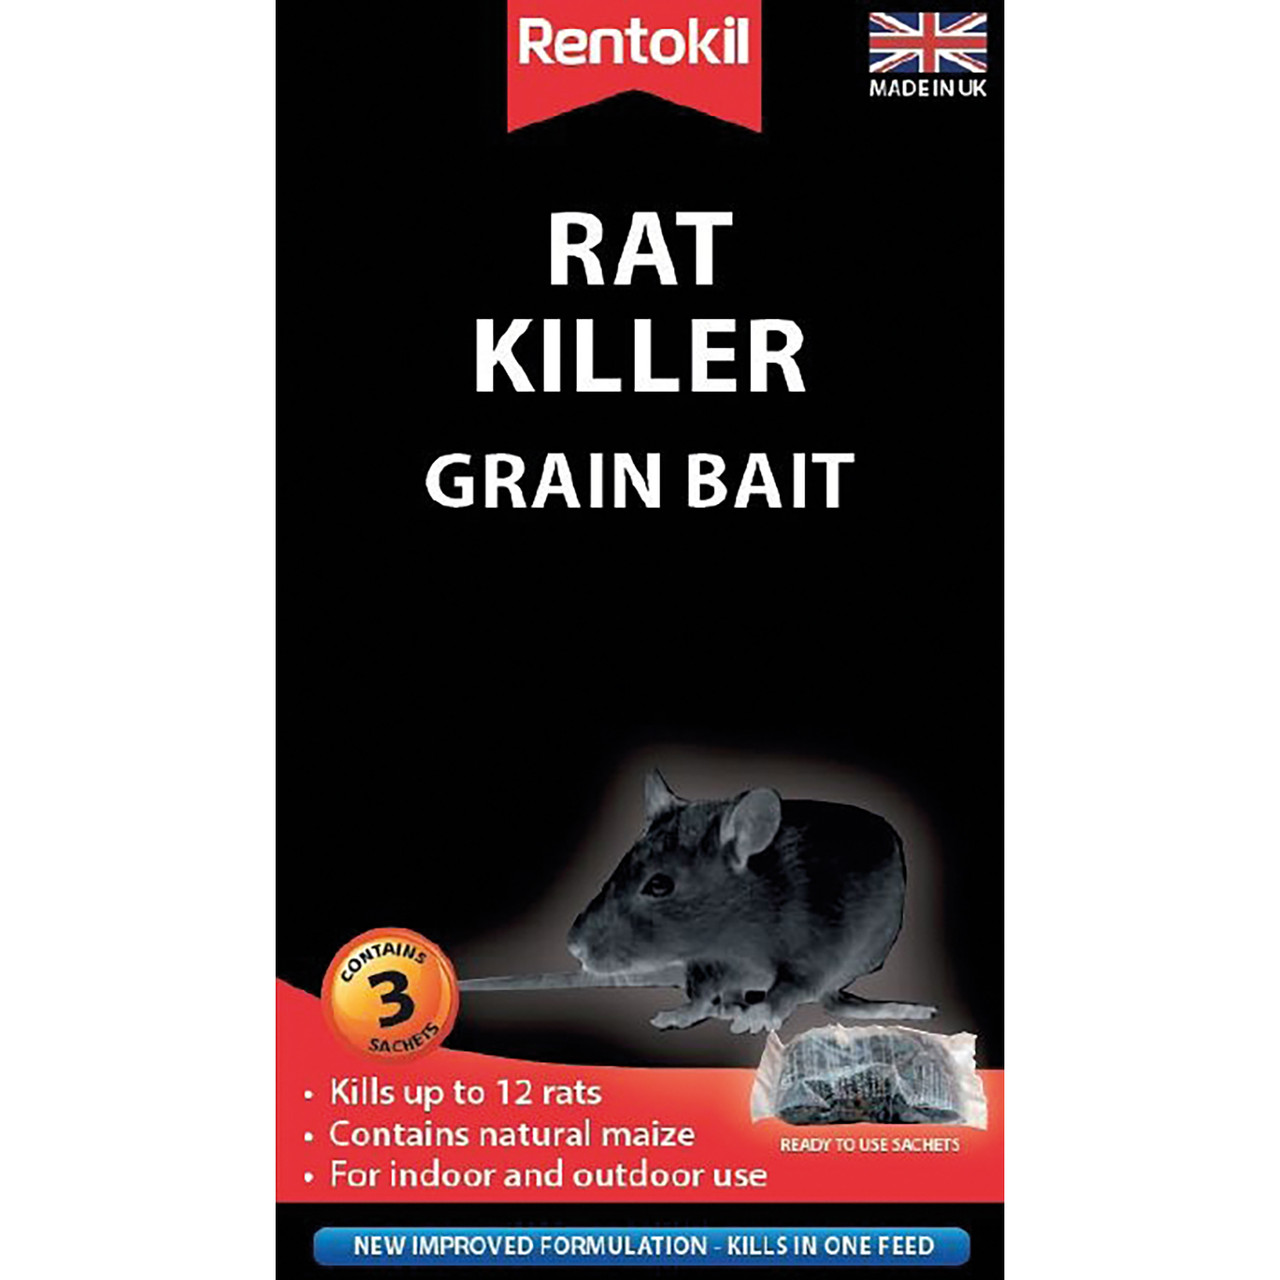 Rentokil Rat Killer Grain Bait - 3 SACHET